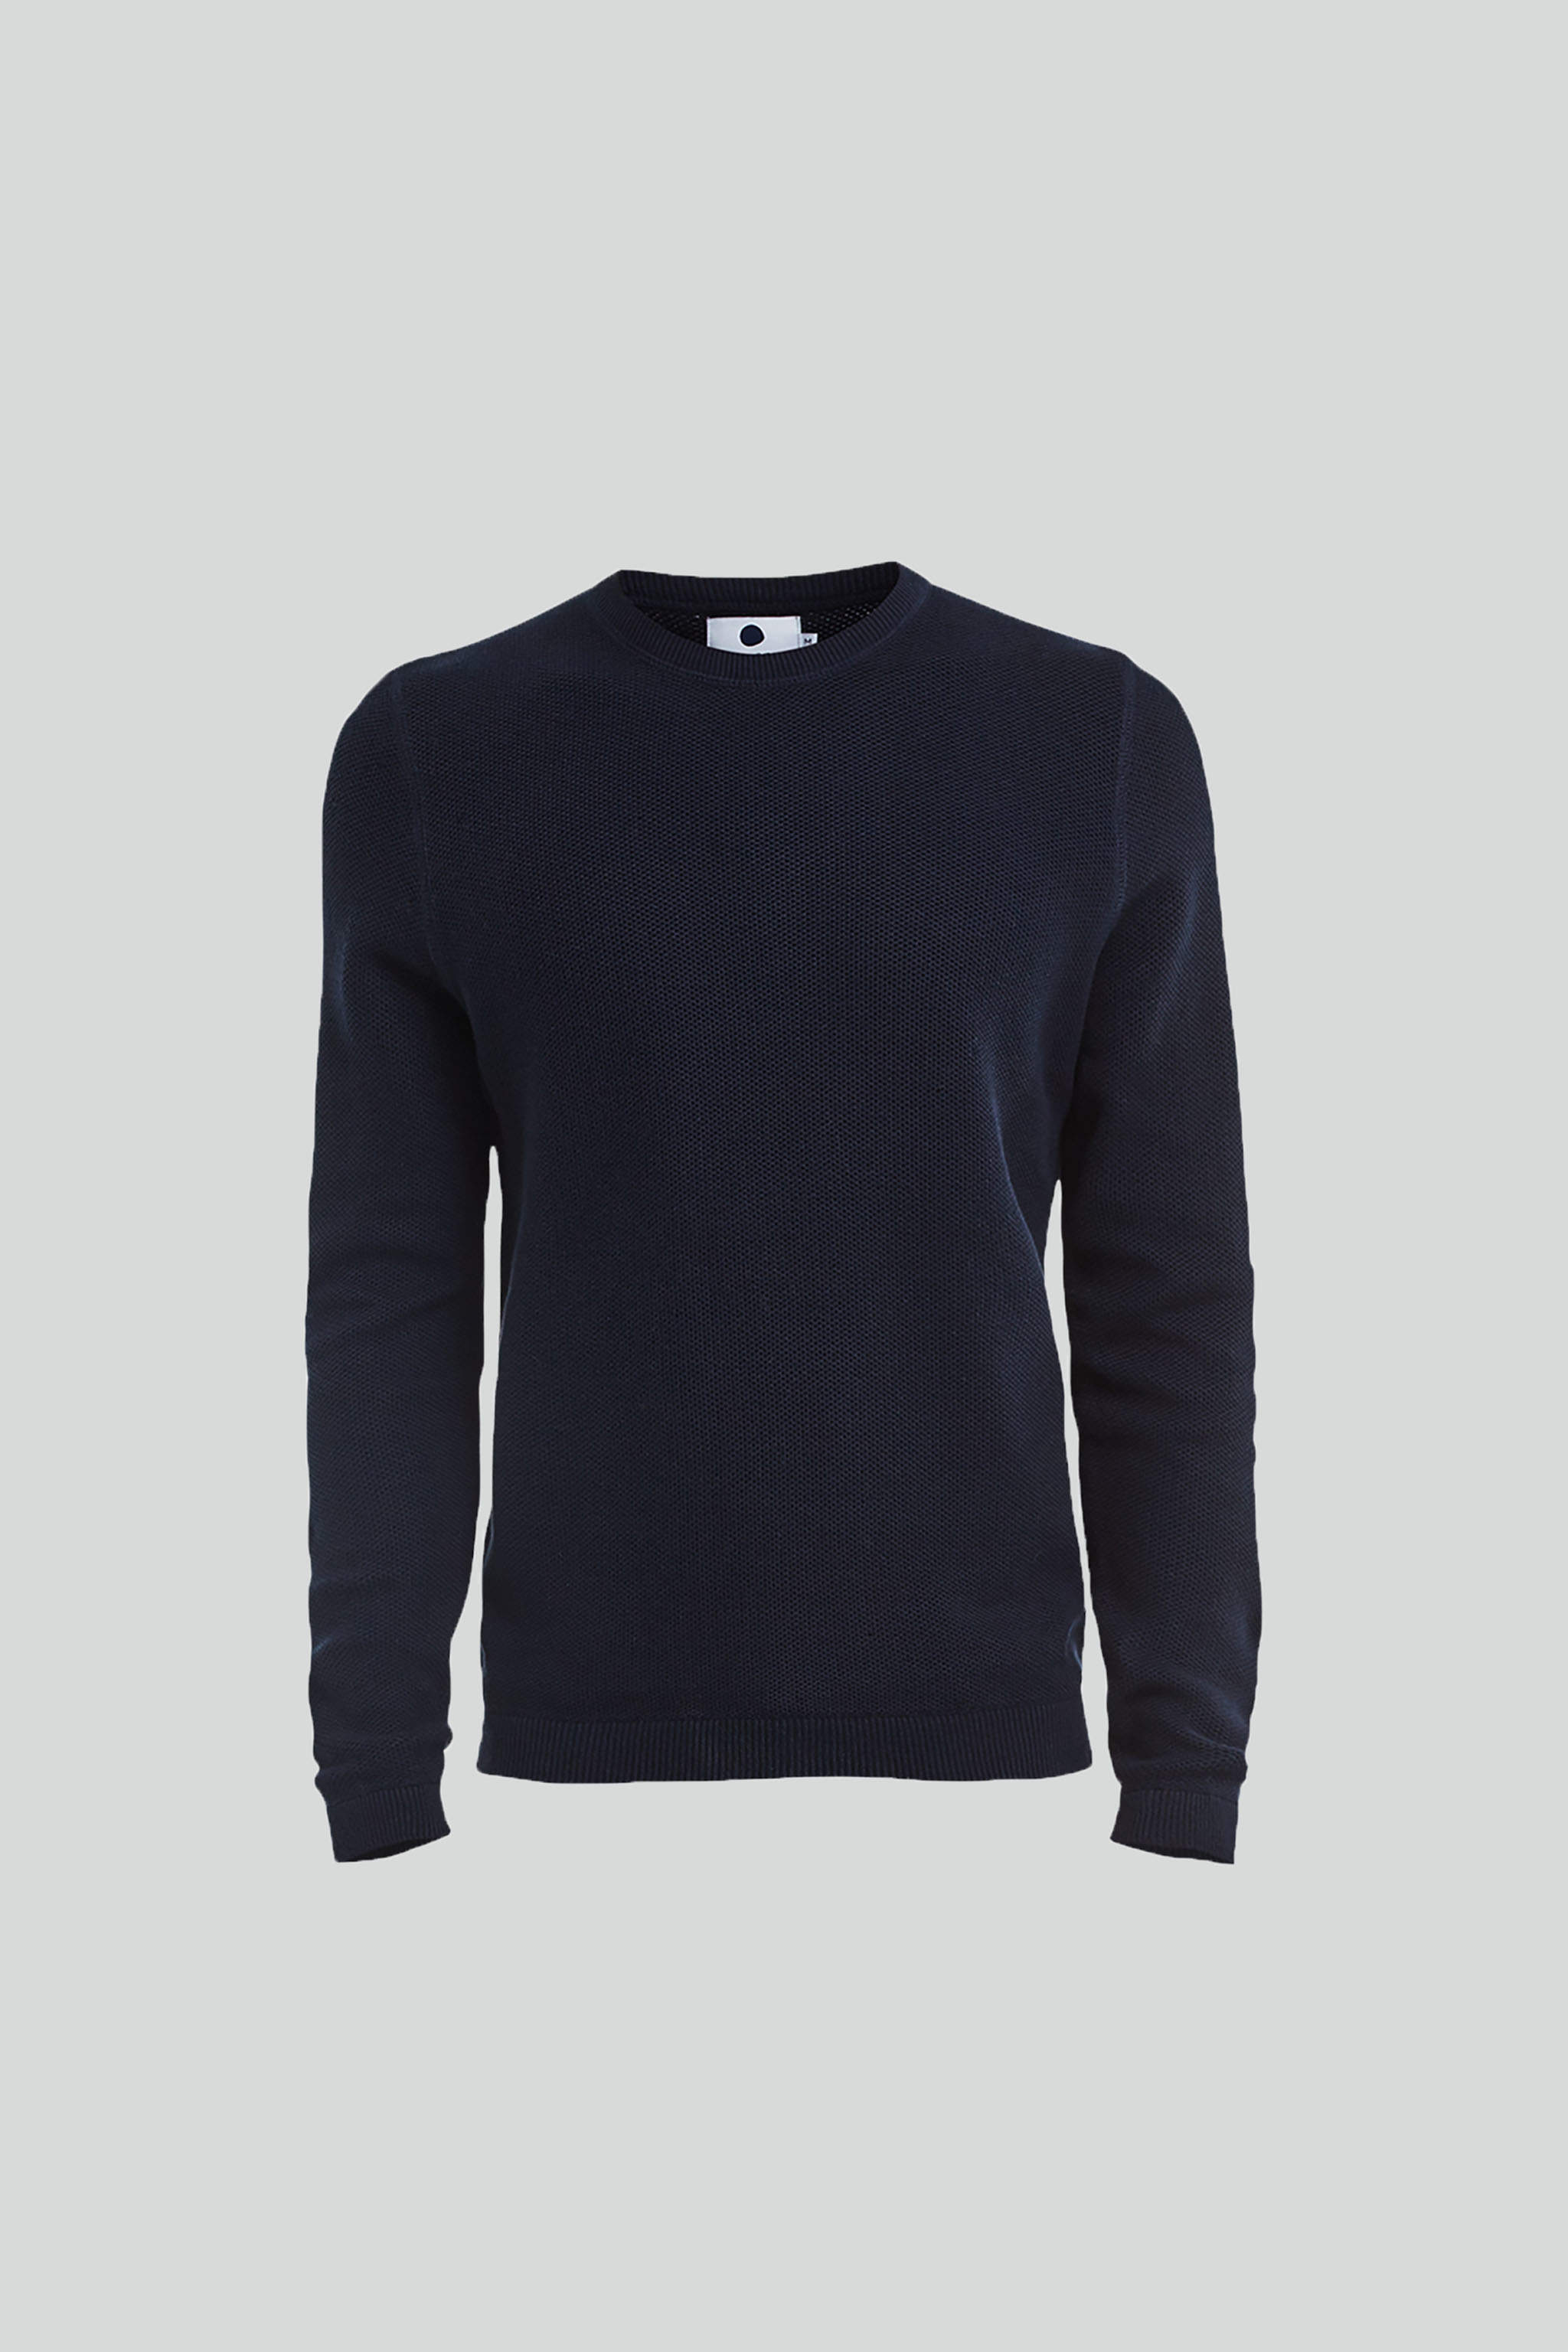 Hubert 6194 men's sweater - Blue - Buy online at